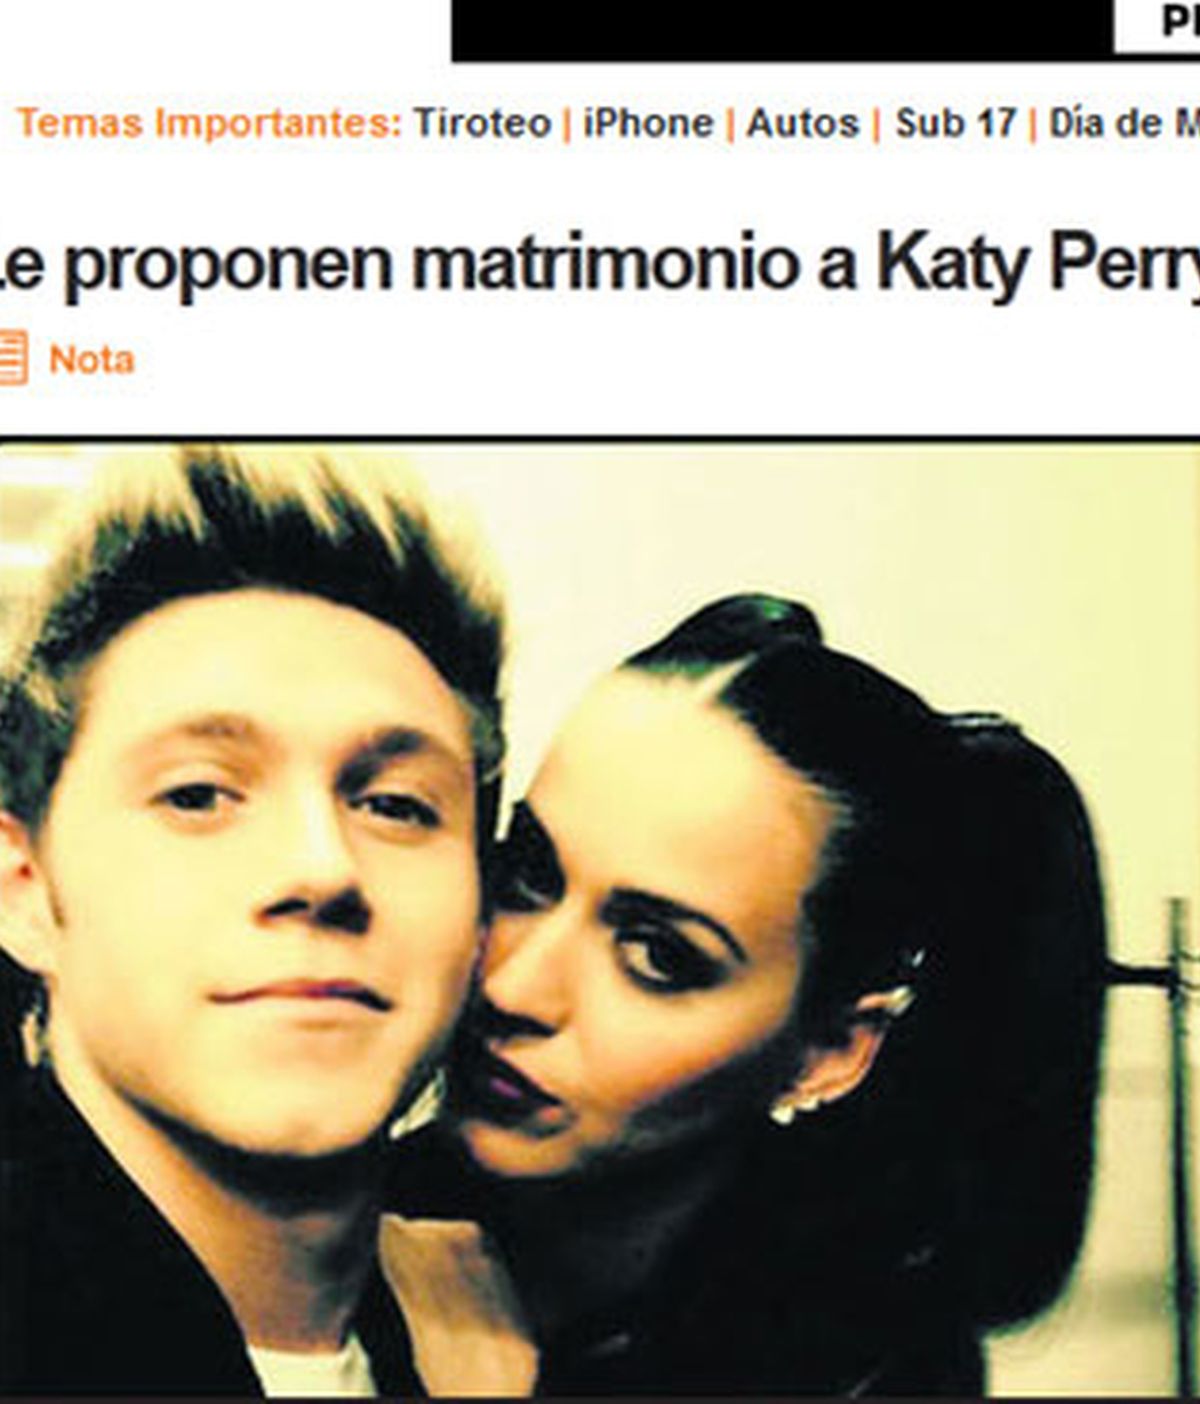 Niall Horan hace una falsa petición de matrimonio a Katy Perry vía Twitter